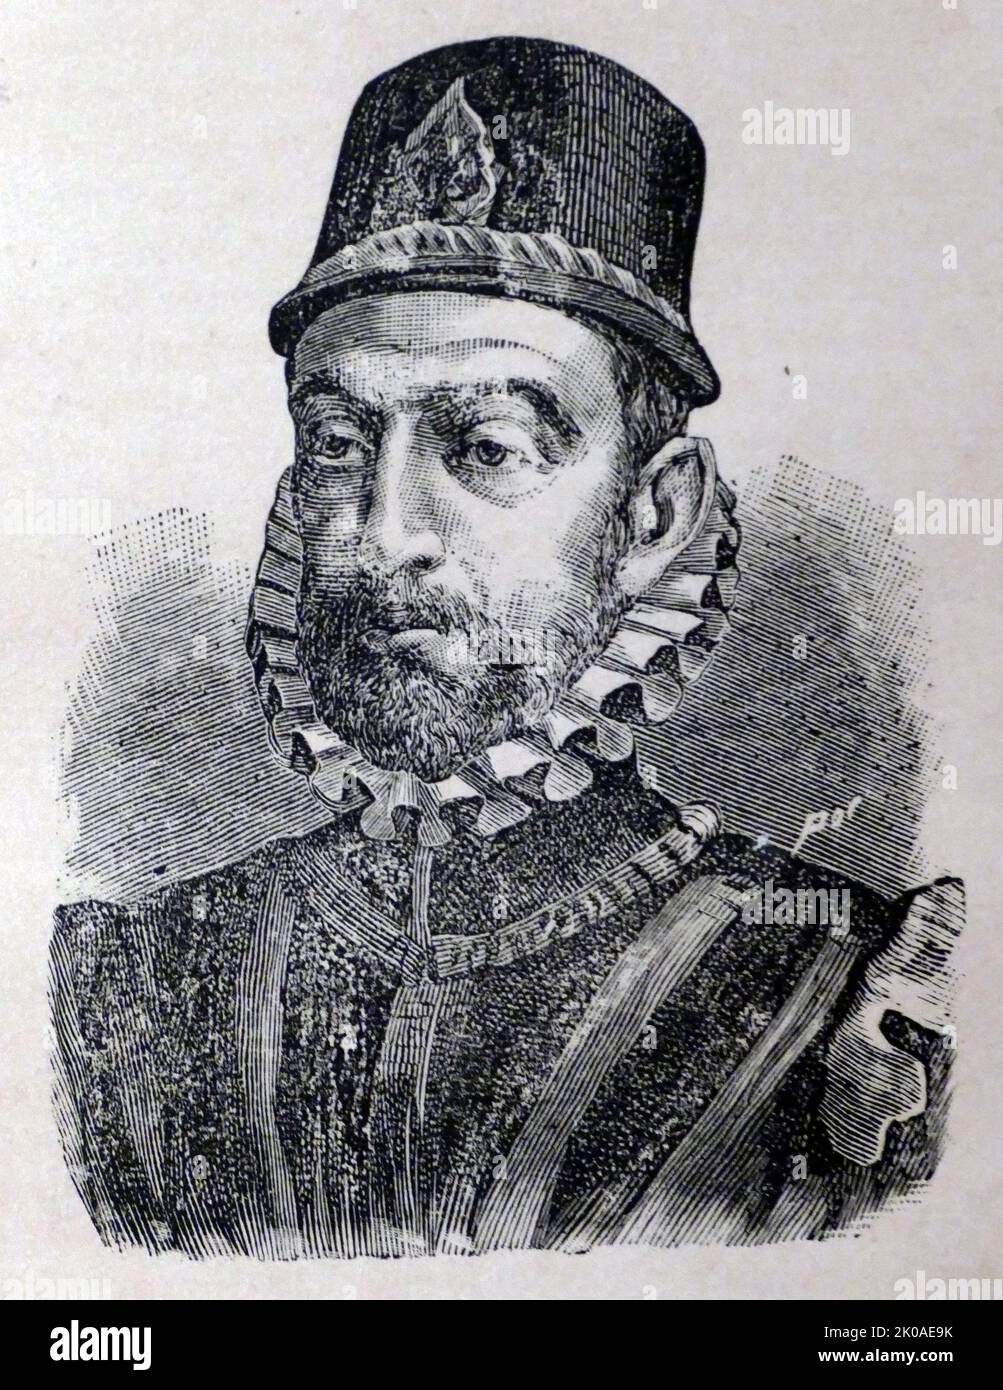 Philipp II. (21. Mai 1527 - 13. September 1598), auch bekannt als Philipp der Kluge (spanisch: Felipe el Prudente), war ab 1556 König von Spanien, ab 1580 König von Portugal und von 1554 bis zu seinem Tod im Jahr 1598 König von Neapel und Sizilien. Er war auch jure uxoris König von England und Irland von seiner Ehe mit Königin Maria I. im Jahr 1554 bis zu ihrem Tod im Jahr 1558. Ab 1540 war er auch Herzog von Mailand. Ab 1555 war er Herr der siebzehn Provinzen der Niederlande Stockfoto